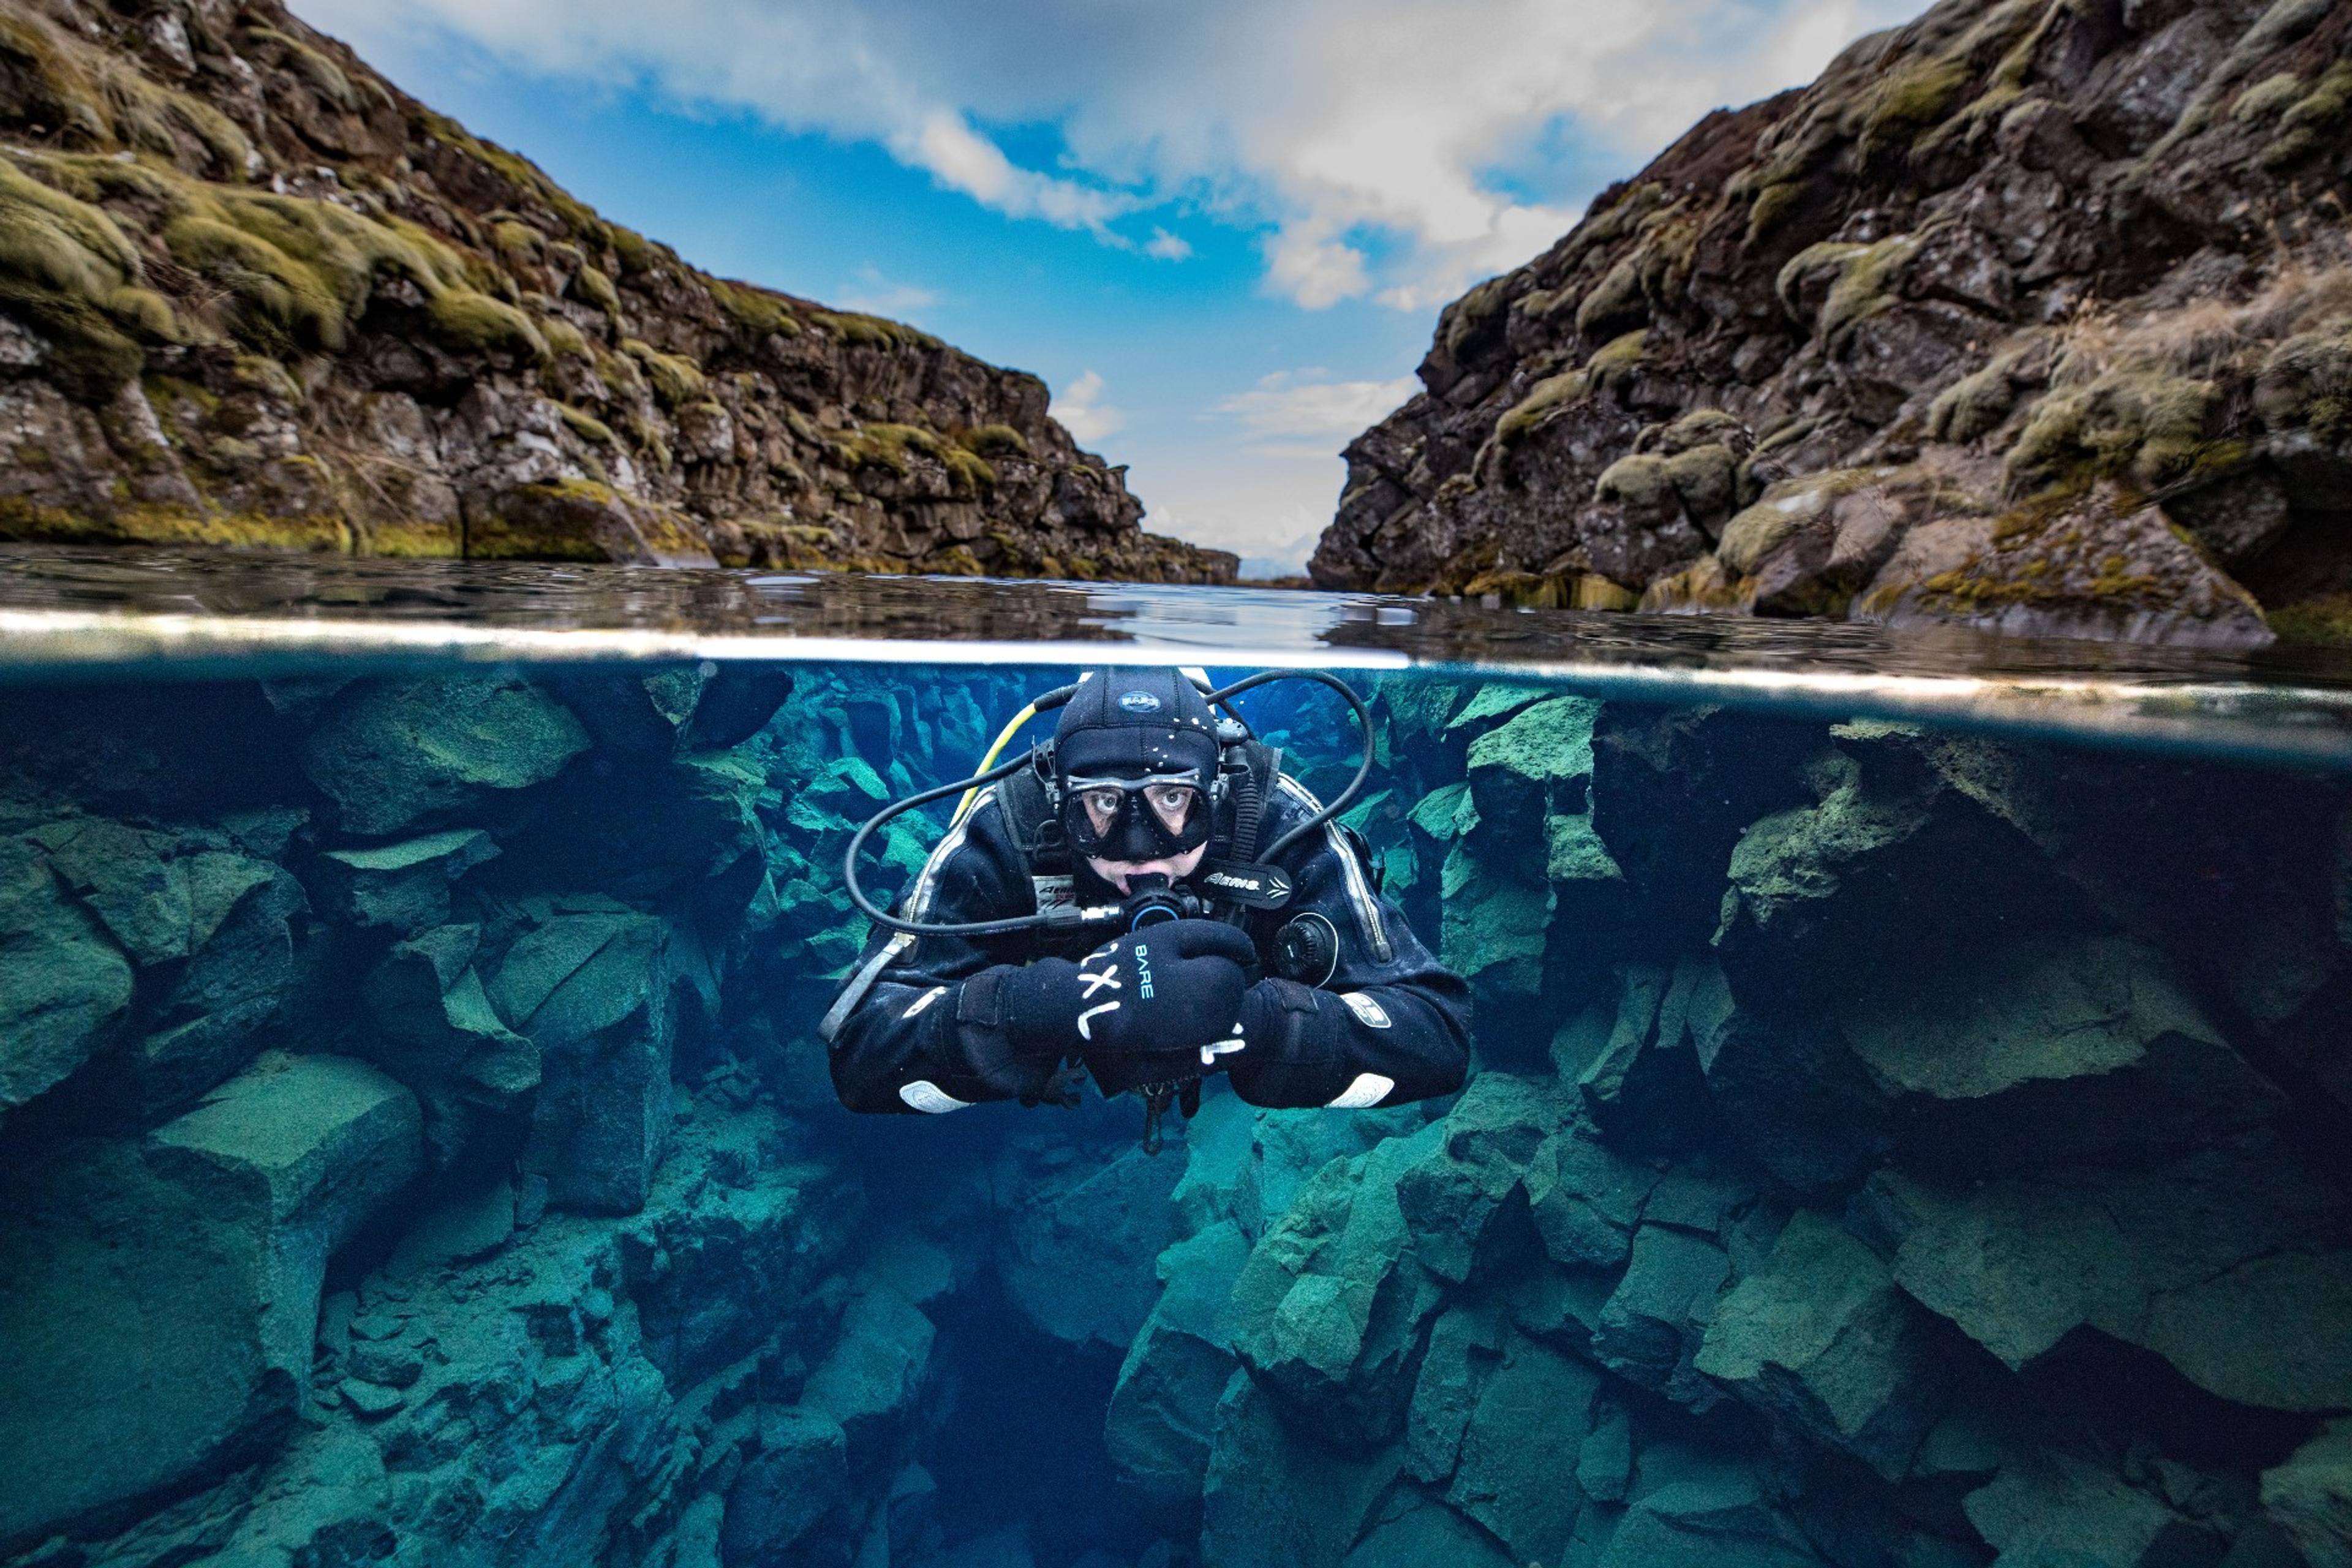 Person diving in Silfrá river in Þingvellir National Park, Iceland.